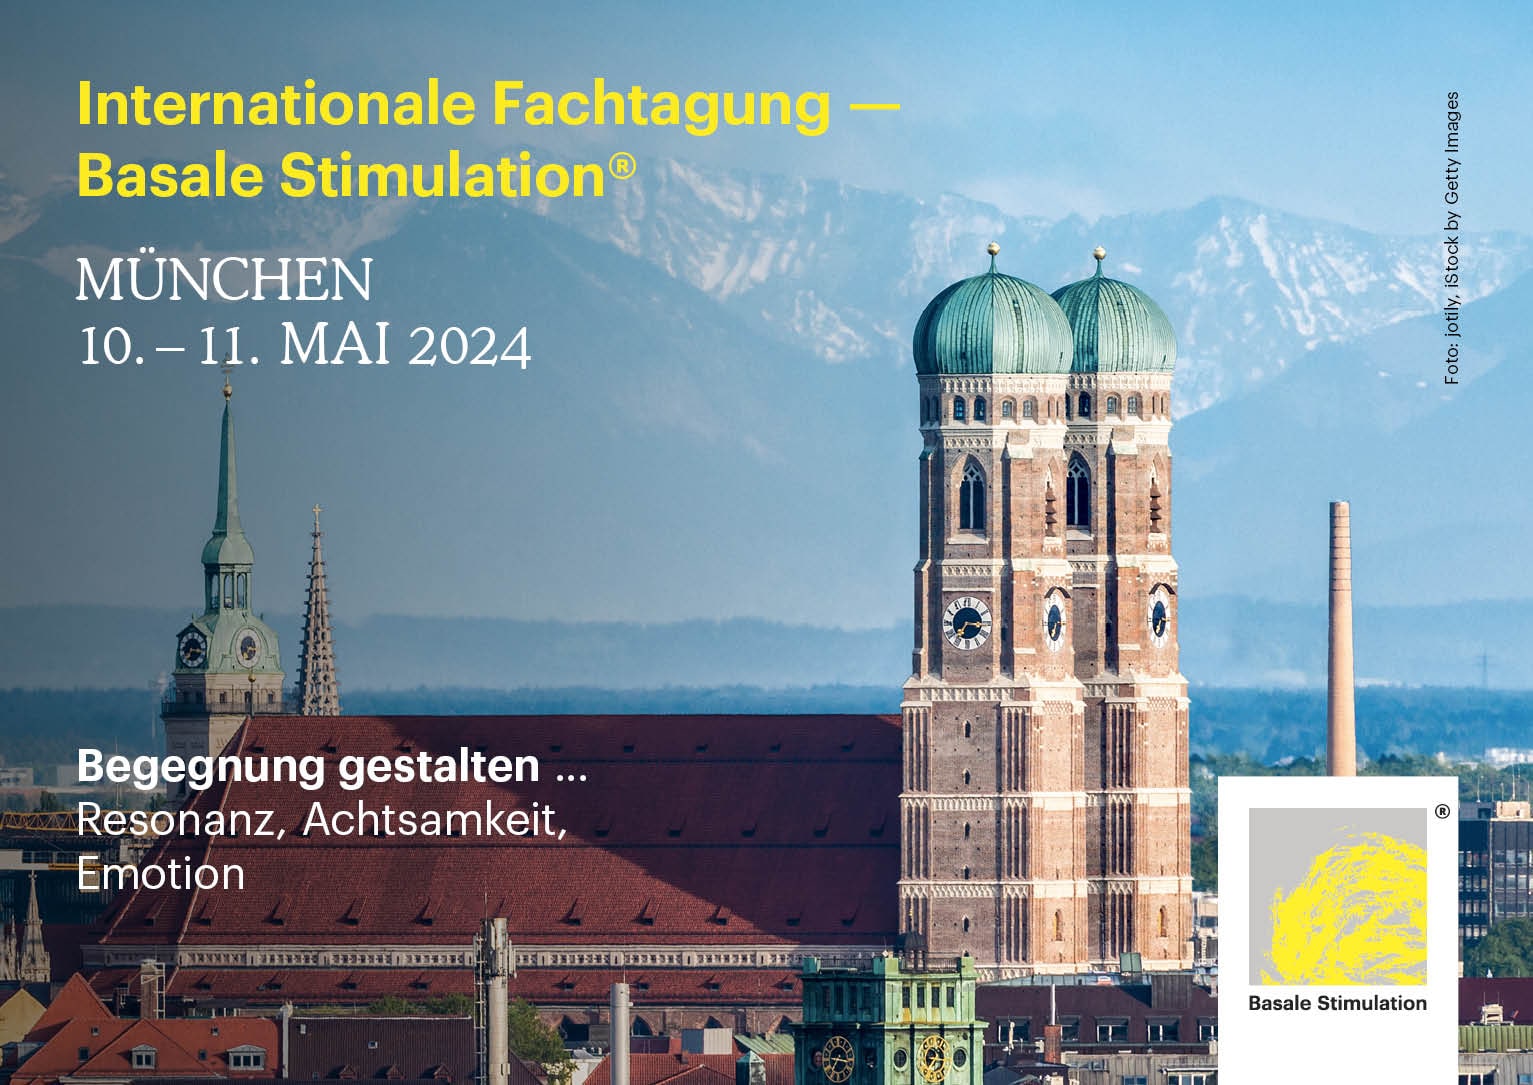 Internationale Fachtagung Basale Stimulation 2024 München Werbebanner